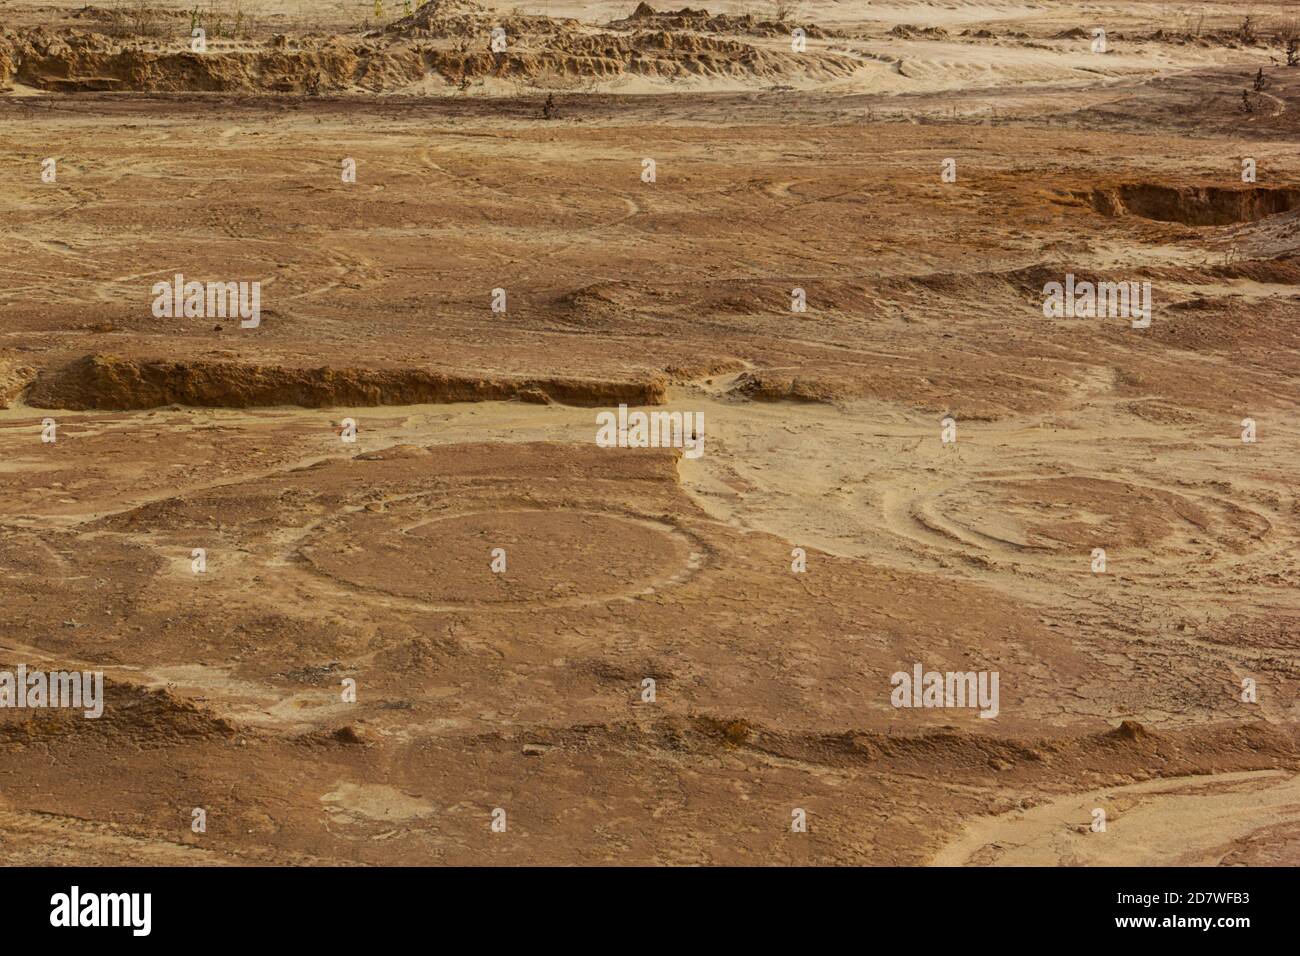 Motif et texture de sable jaune, arrière-plan Banque D'Images